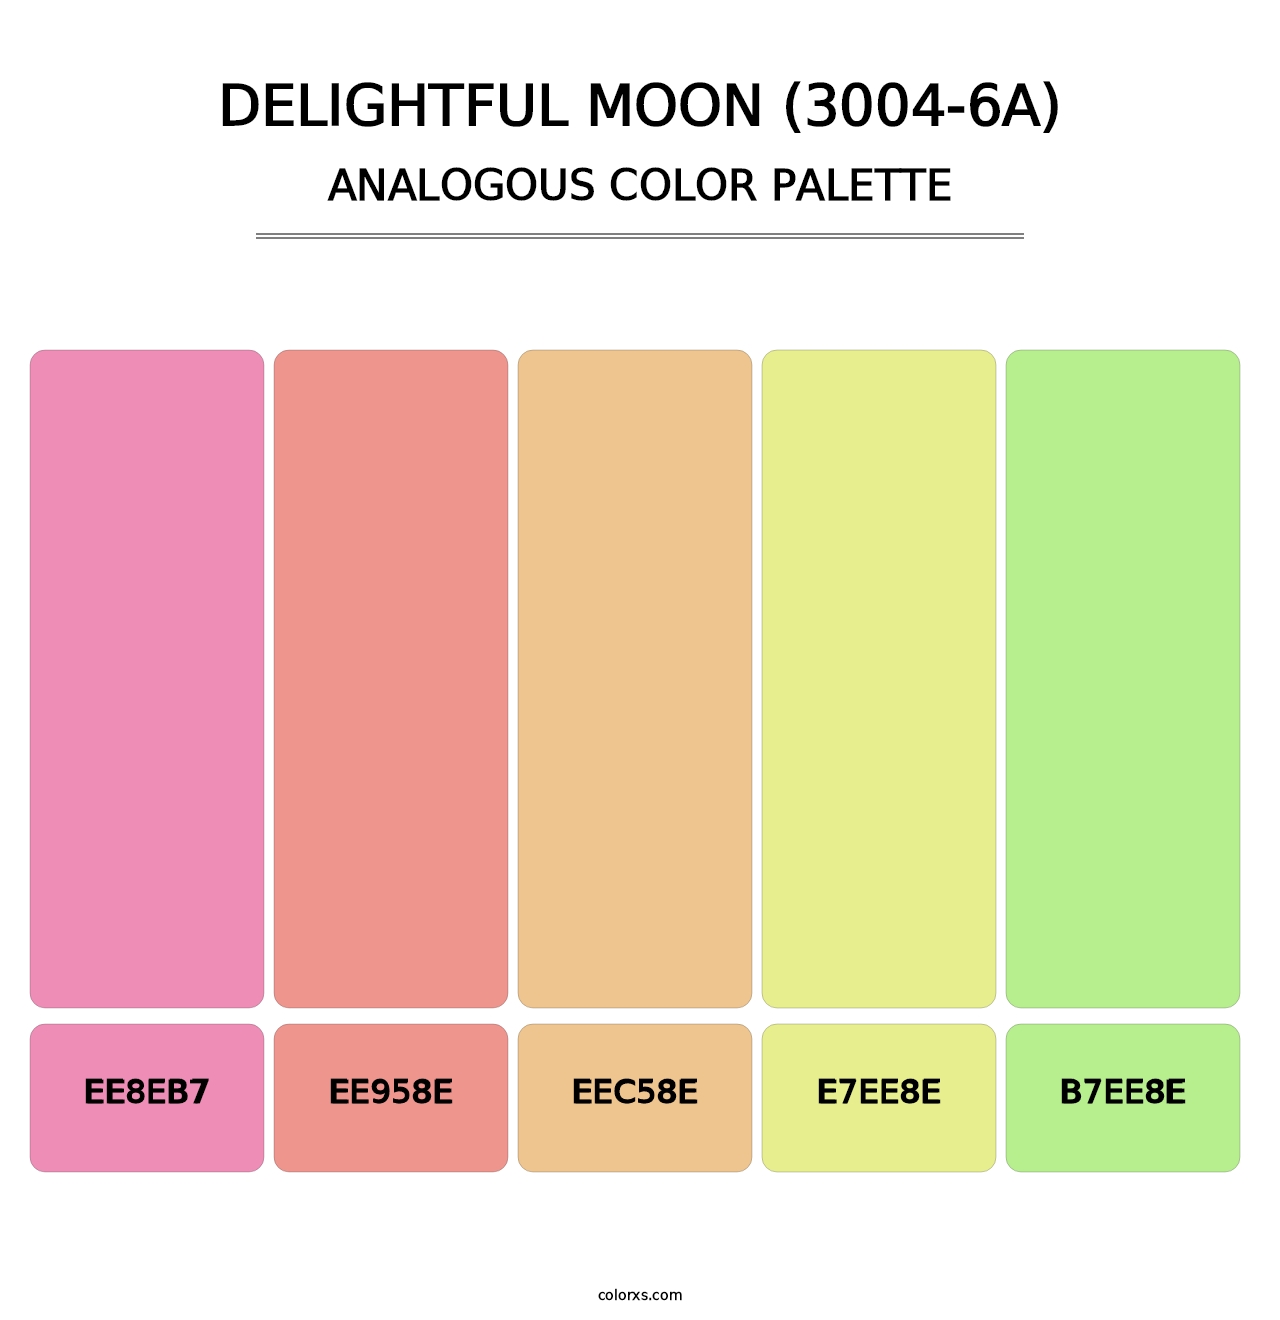 Delightful Moon (3004-6A) - Analogous Color Palette